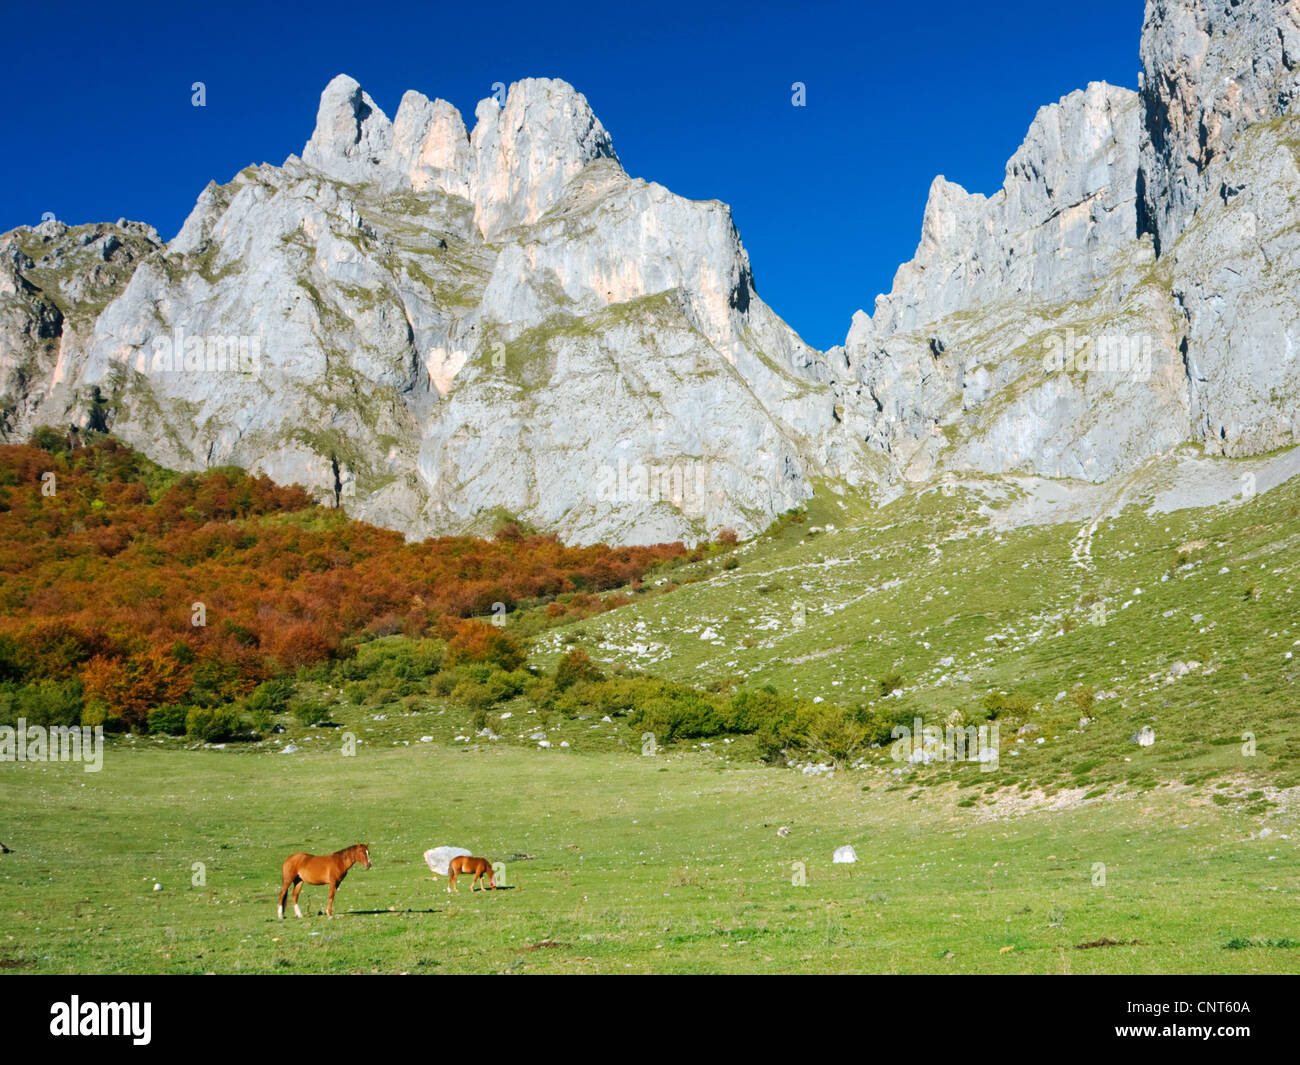 Chevaux à Fuente de , monts Cantabriques, en Espagne, Cantabria, parc national Picos de Europa Banque D'Images